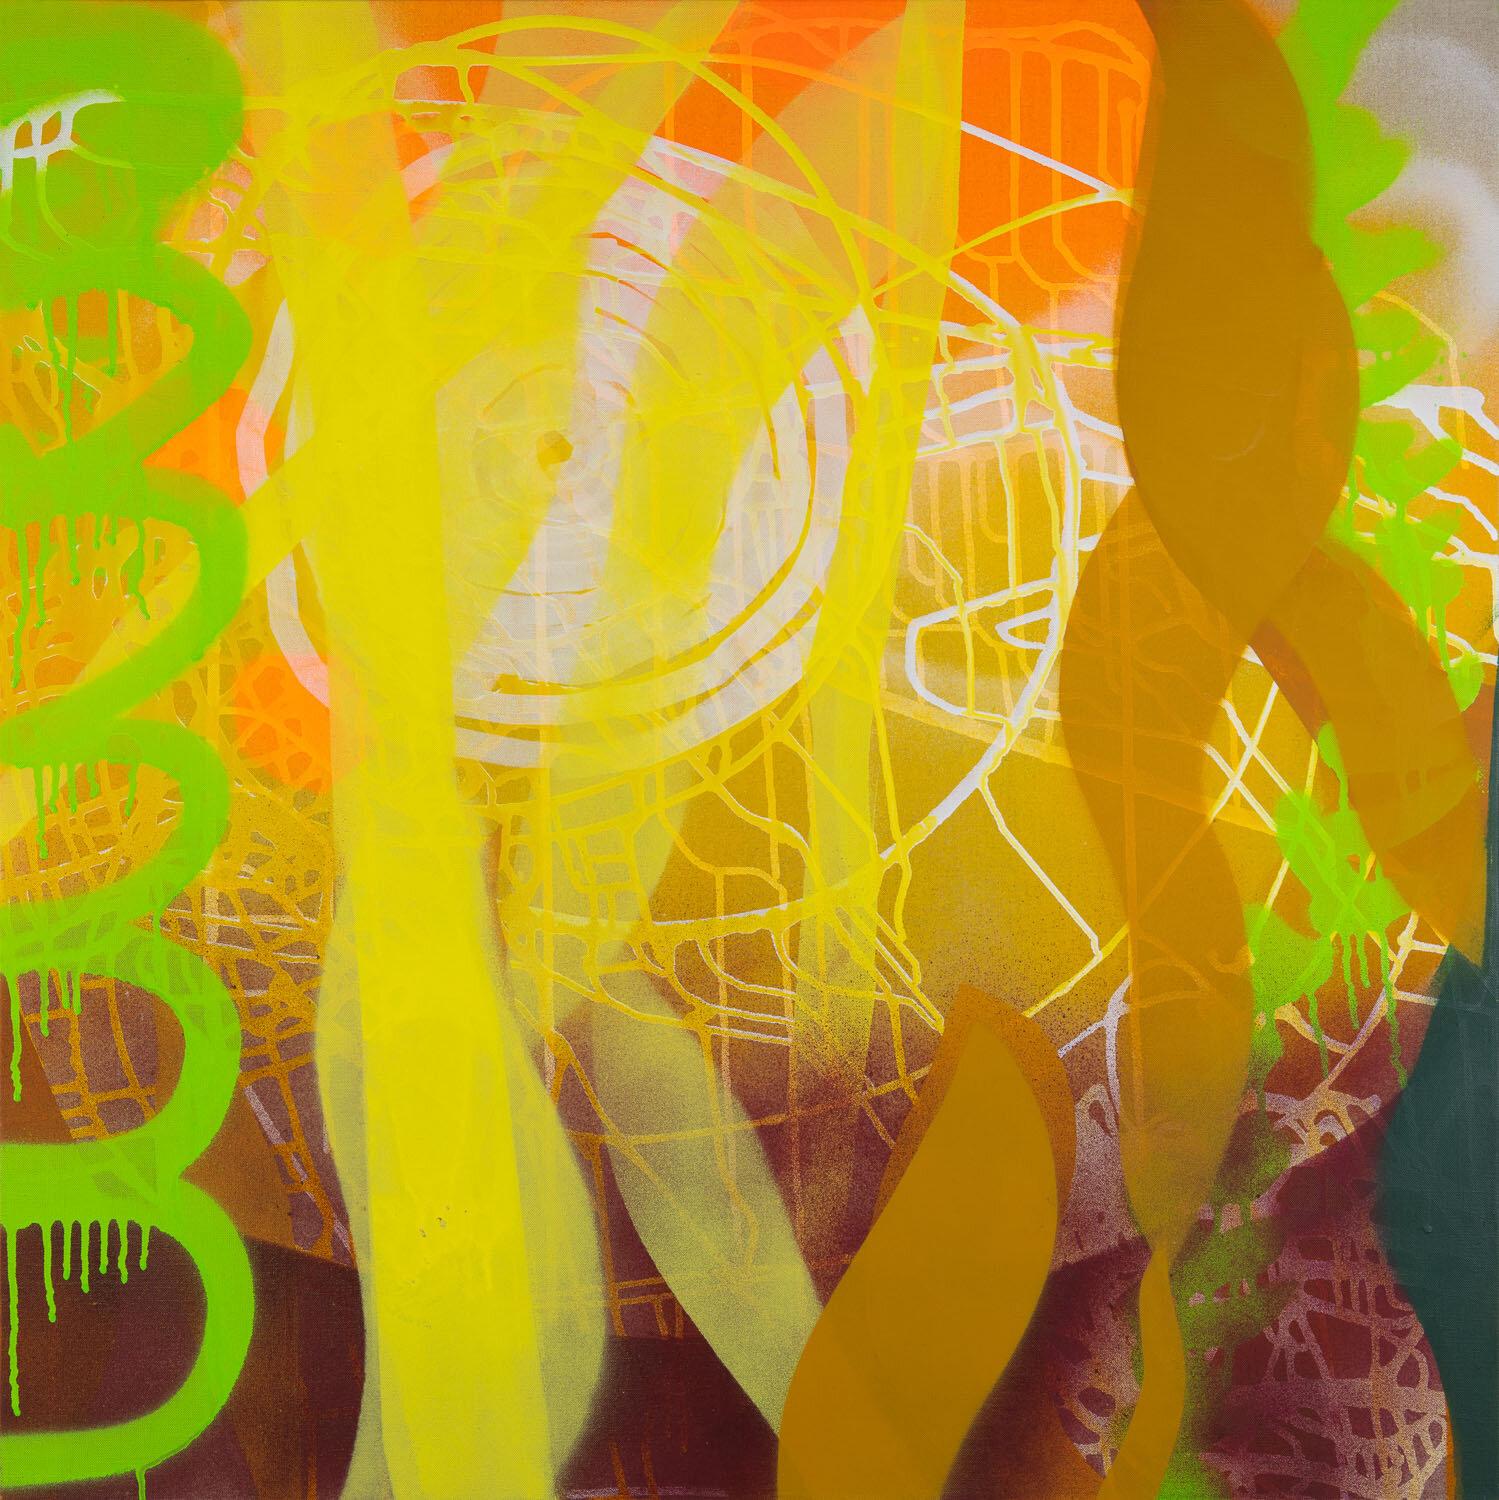 Abstract Painting Rachelle Krieger - Radiance, plantes abstraites vert vif et orange, scène surréaliste